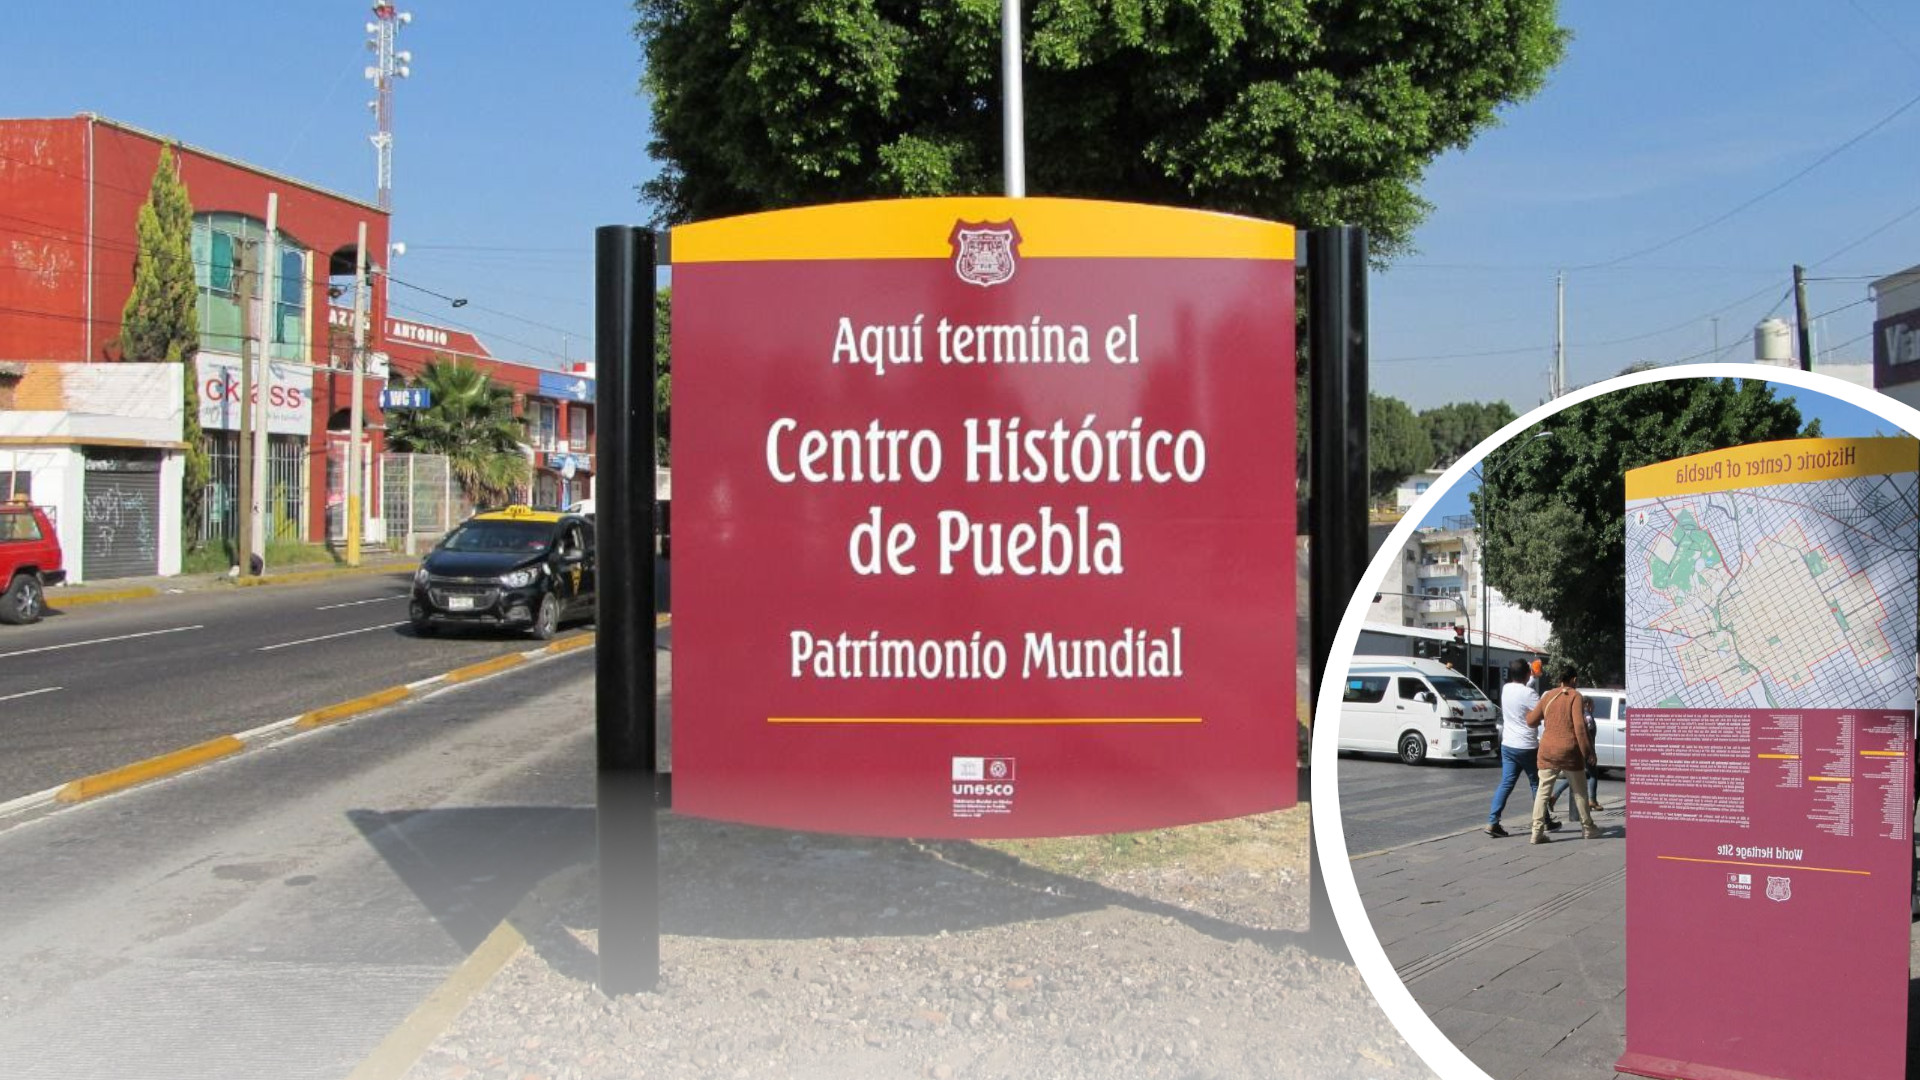 “Aquí termina el Centro Histórico de Puebla”; ayuntamiento renueva señalética en la ciudad